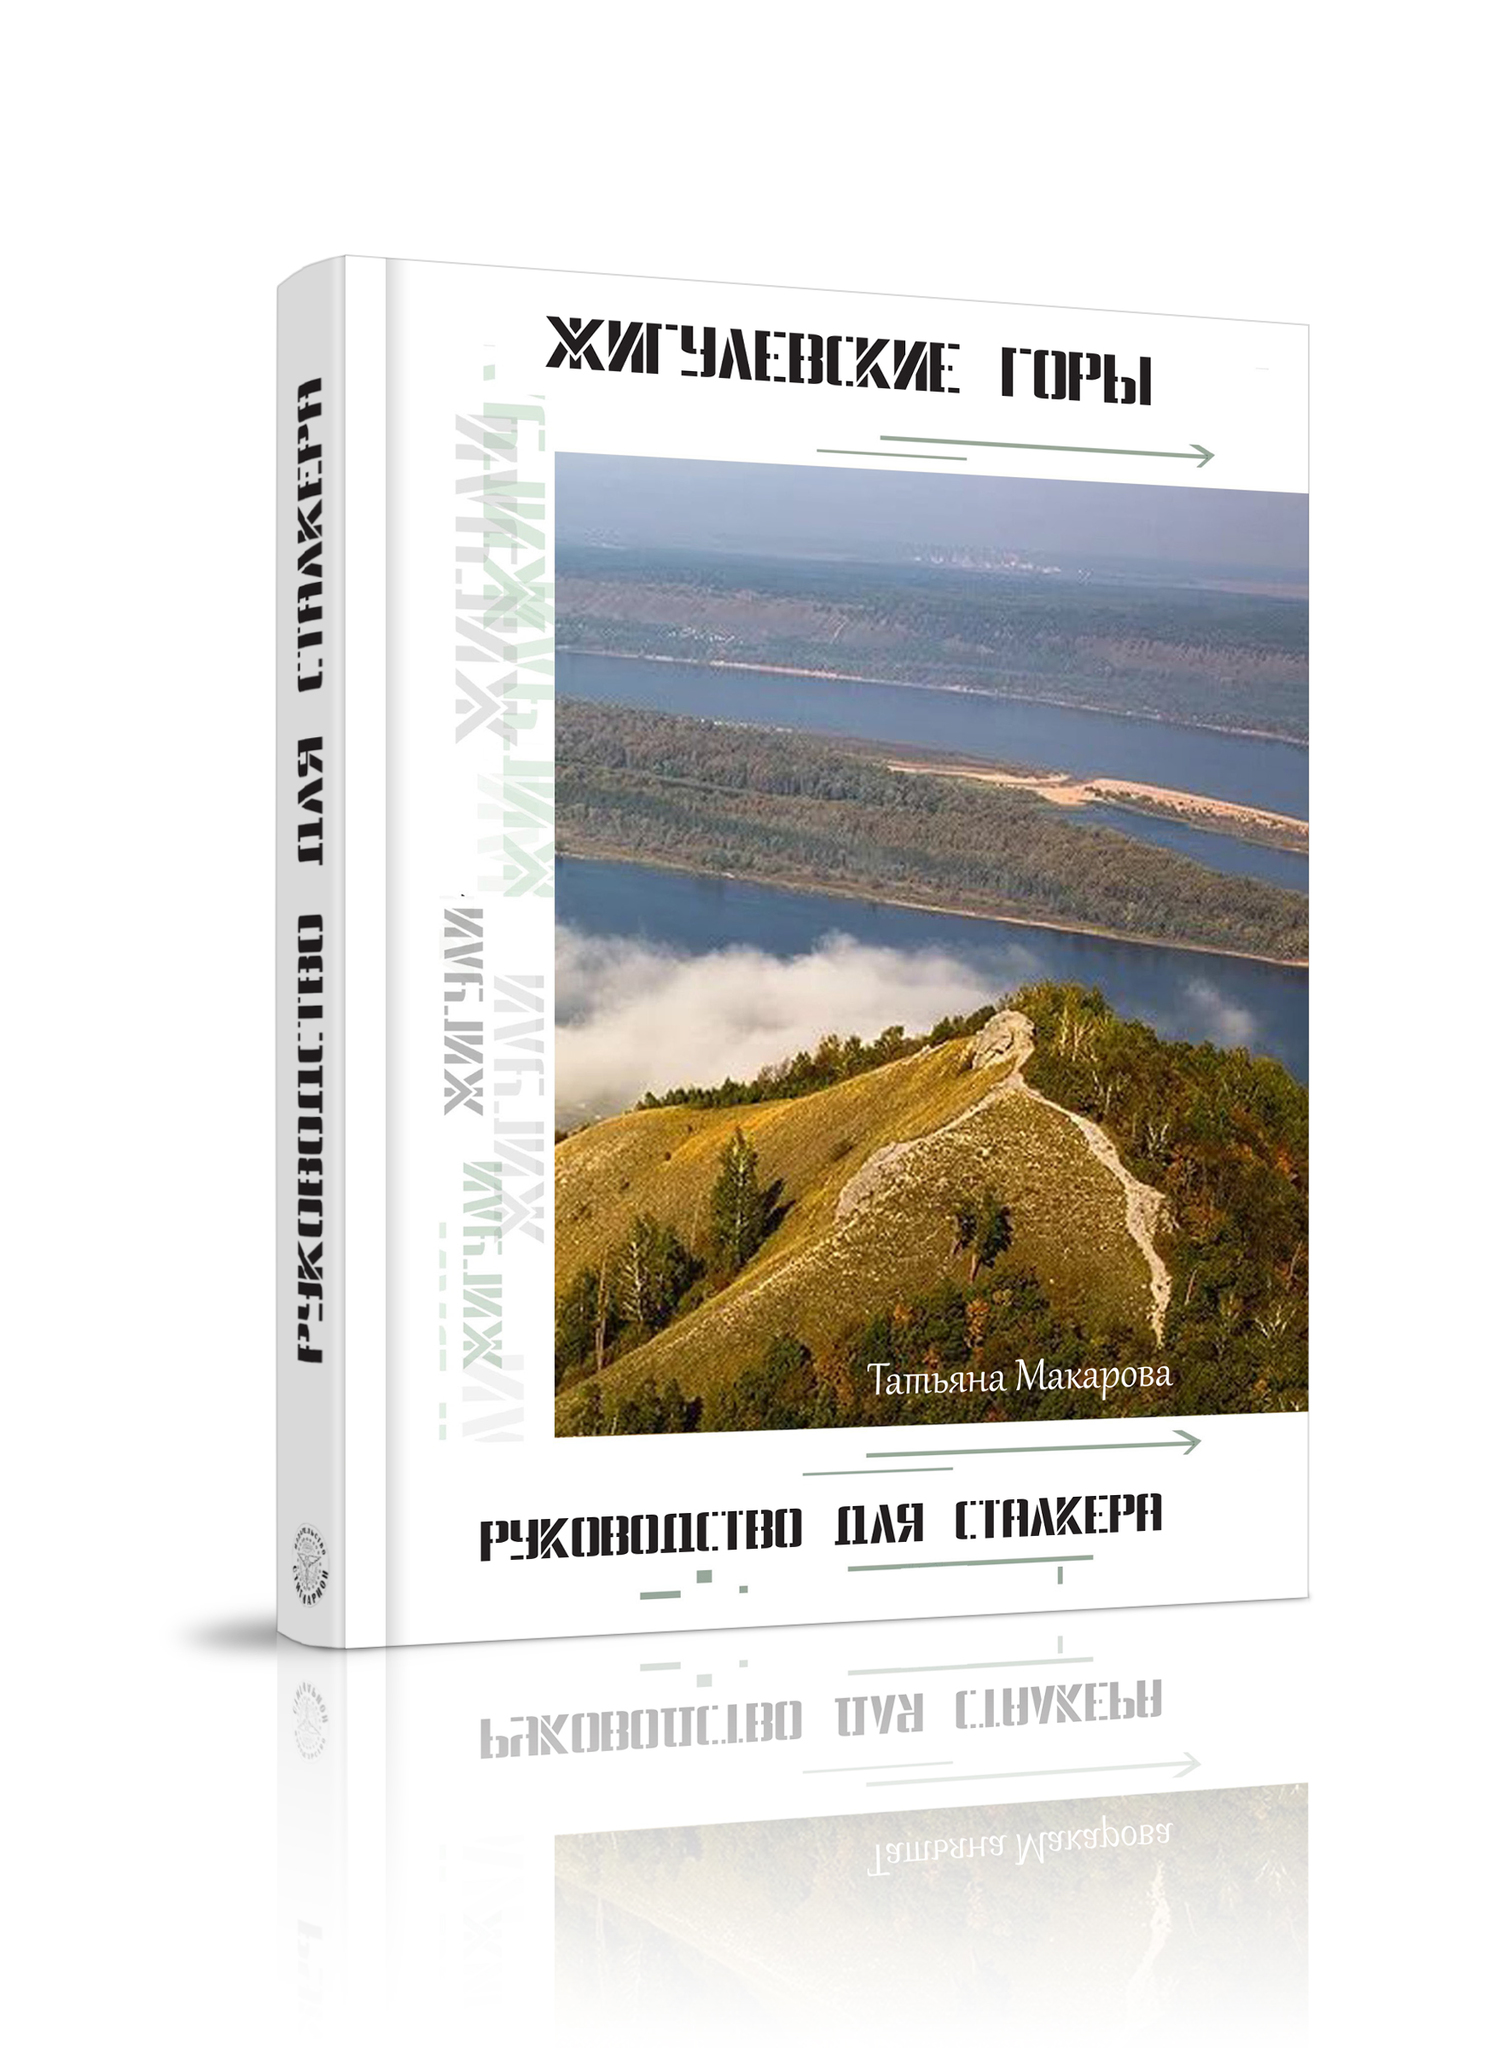 Т.Макарова - Пособие &quot;Жигулёвские горы. Руководство для сталкеров&quot;